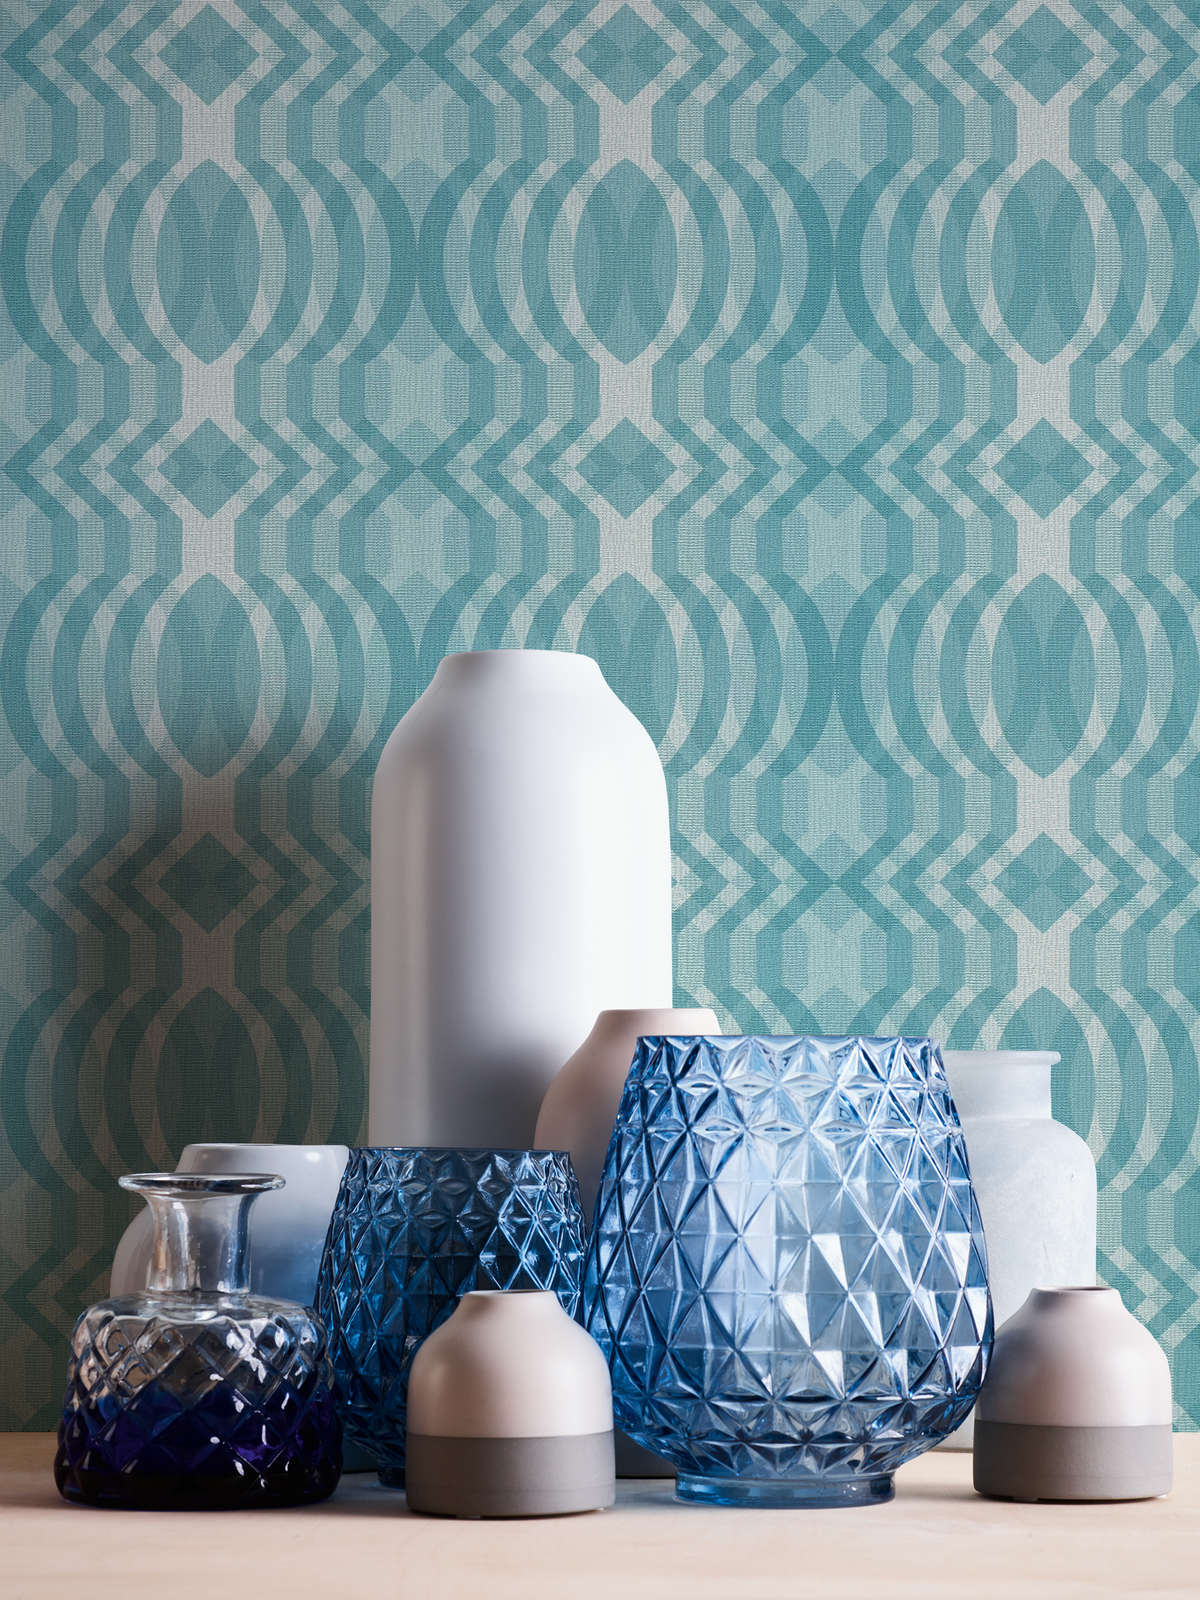             papier peint en papier rétro à motifs géométriques - bleu, crème, blanc
        